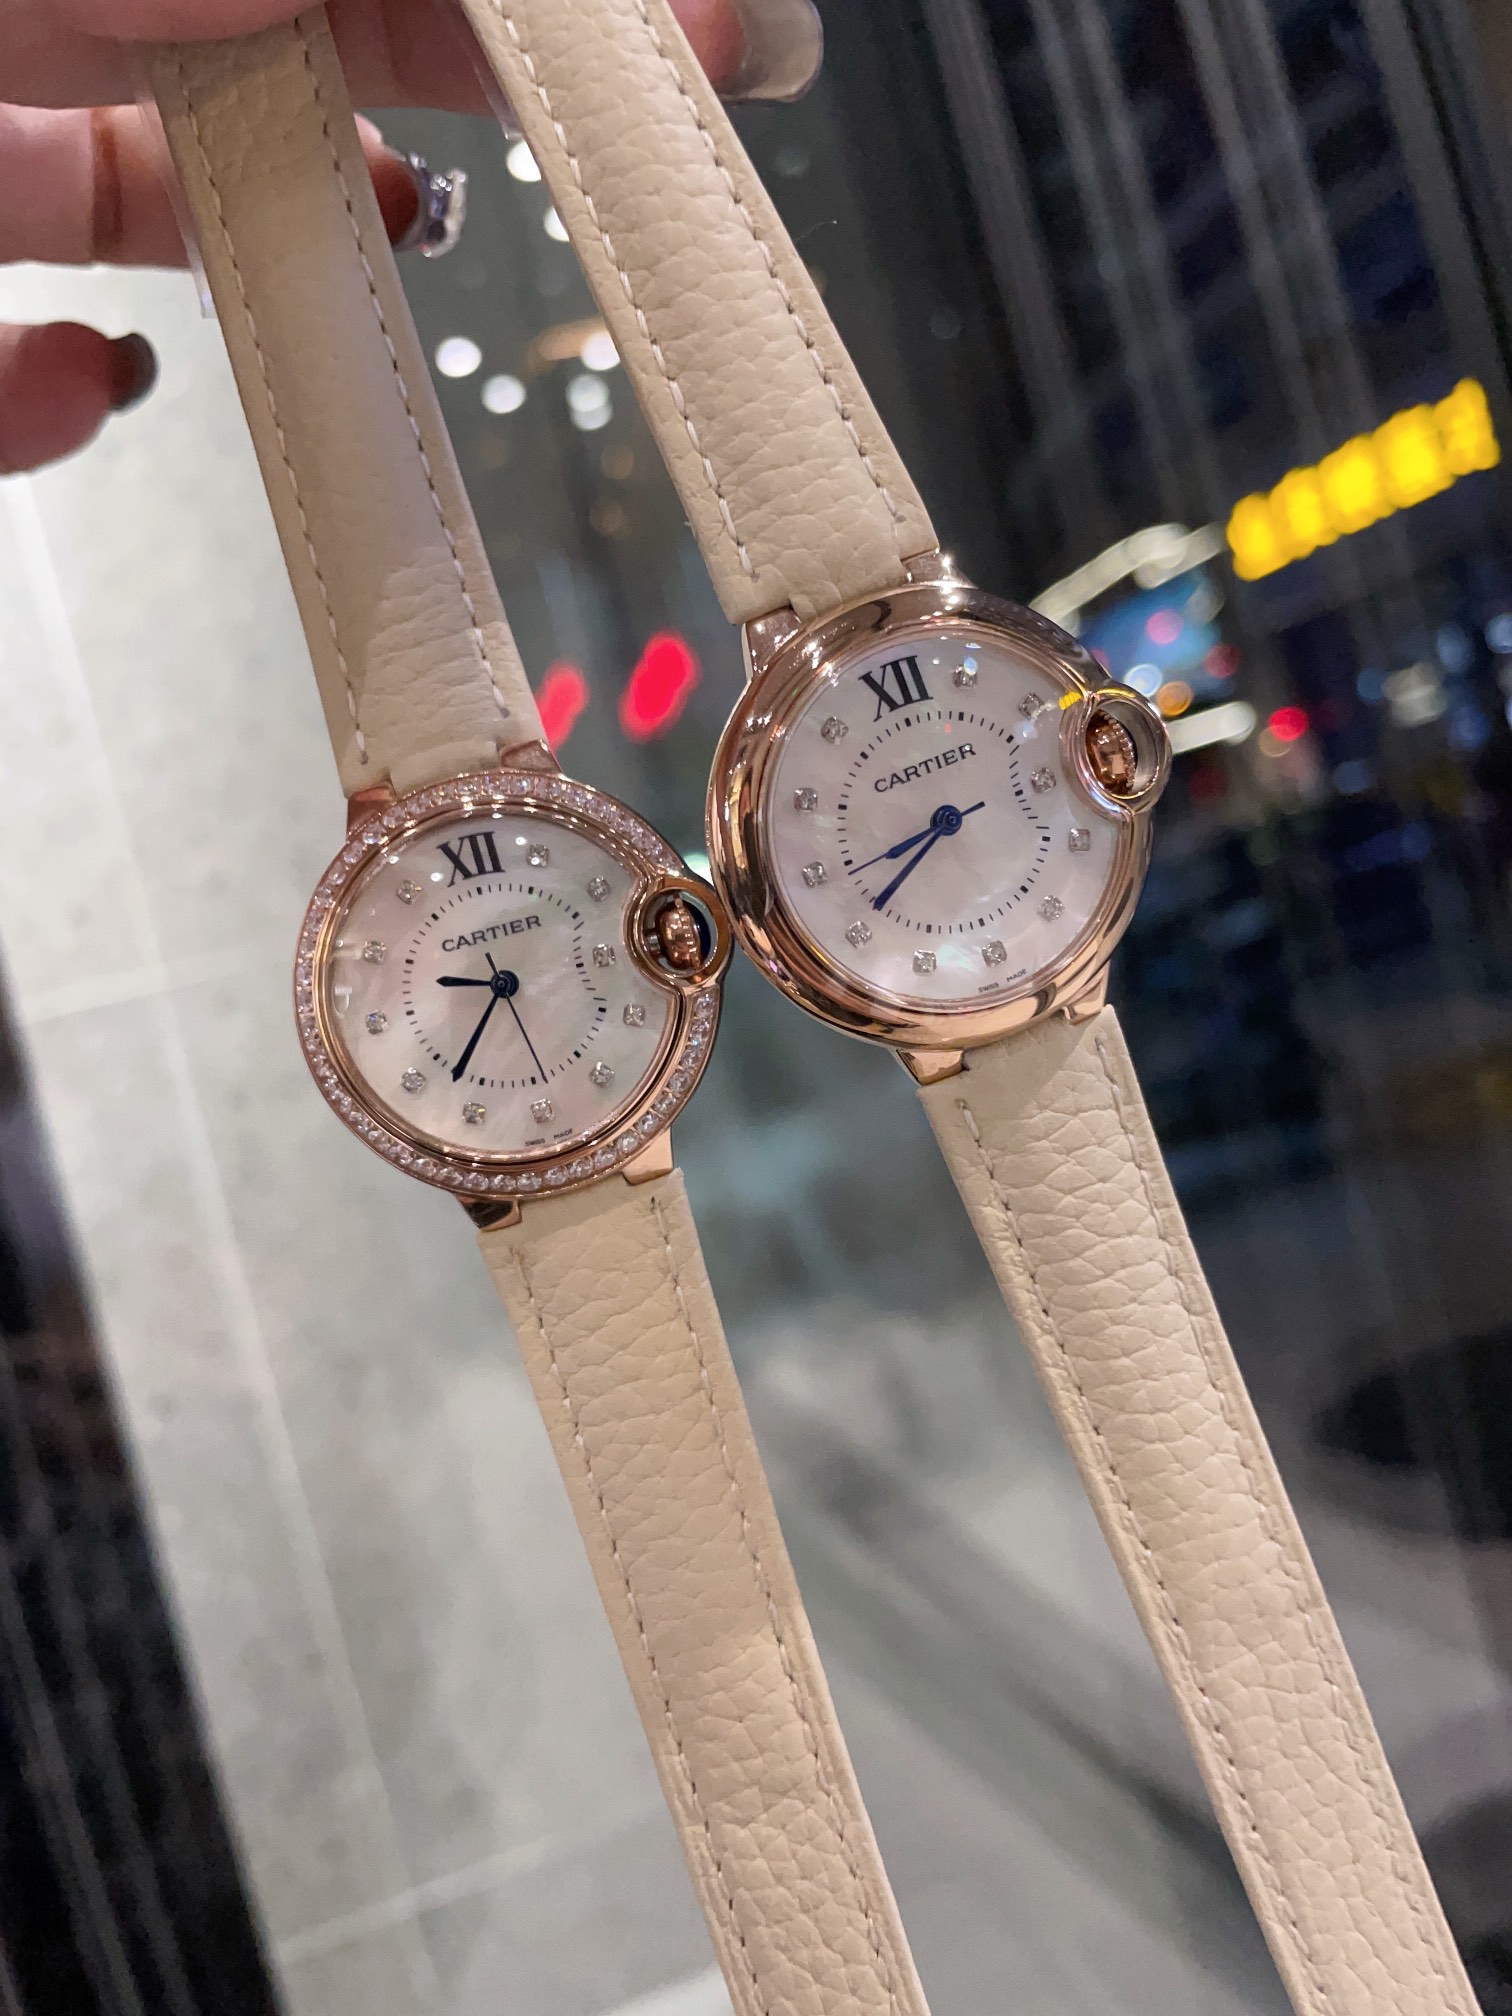 CARTIERカルティエ 腕時計 ムーブメントスーパーコピー フランス 薄い レ 腕時計 スチールバンド レザー ホワイト_4